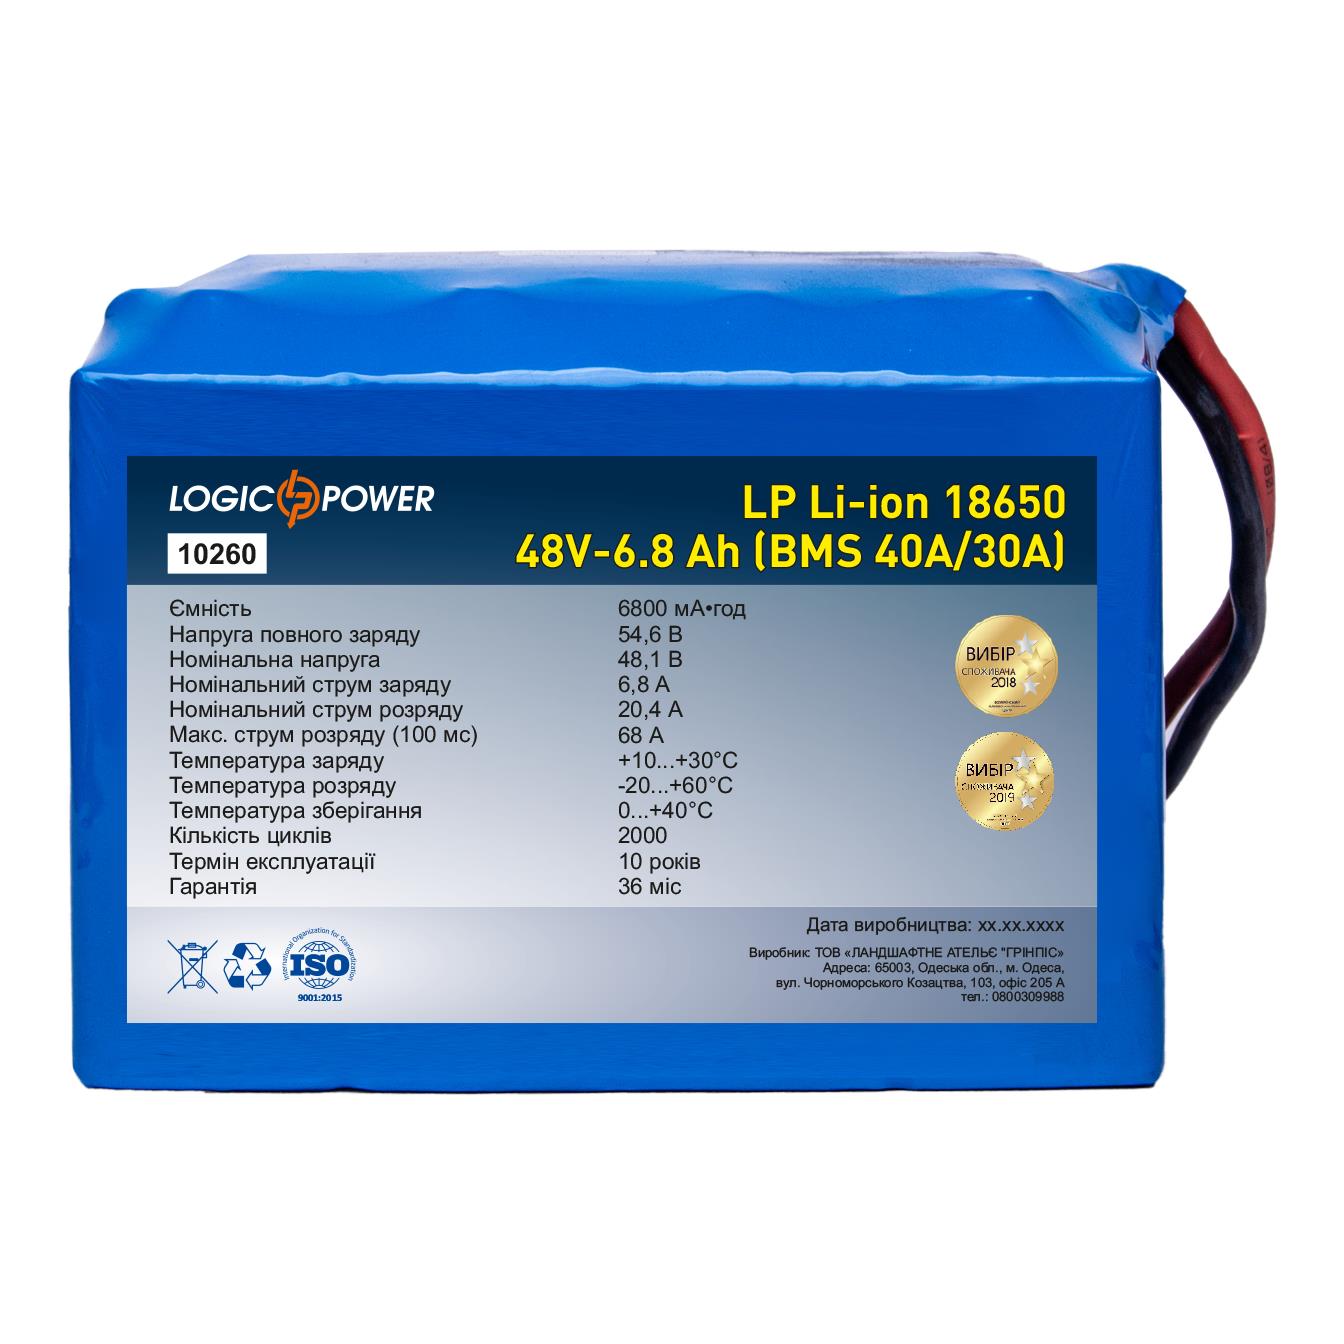 Акумулятор 48 В LogicPower LP Li-ion 18650 48V - 6.8 Ah (BMS 40A/30А) (10260)